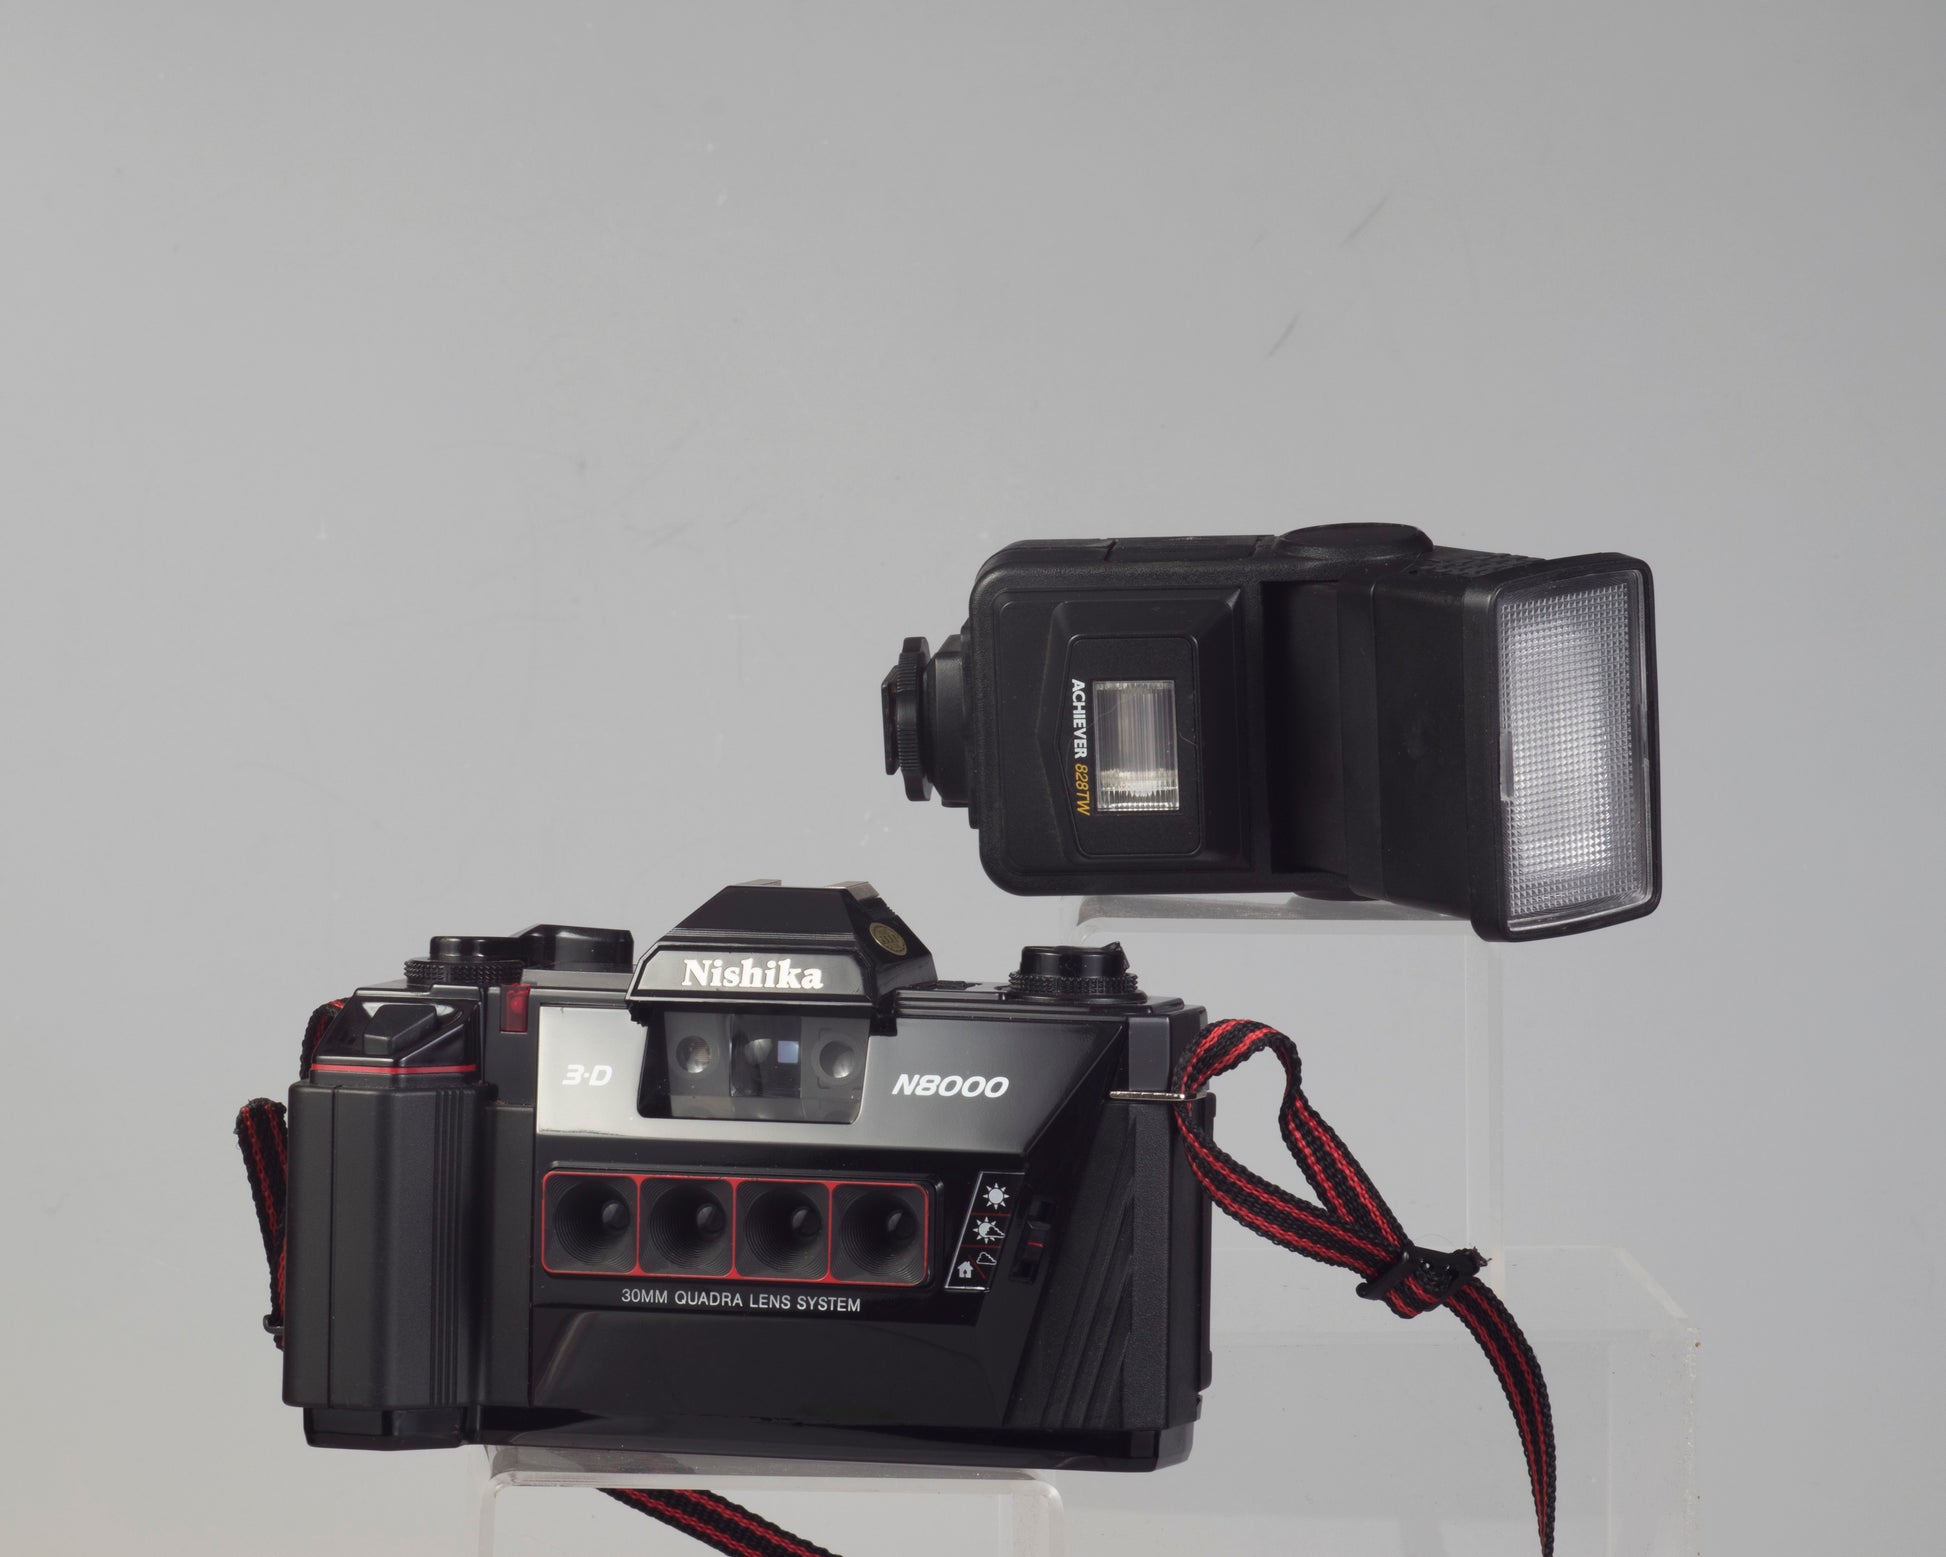 The Nishika N8000 3-D 35mm film camera with twin flash